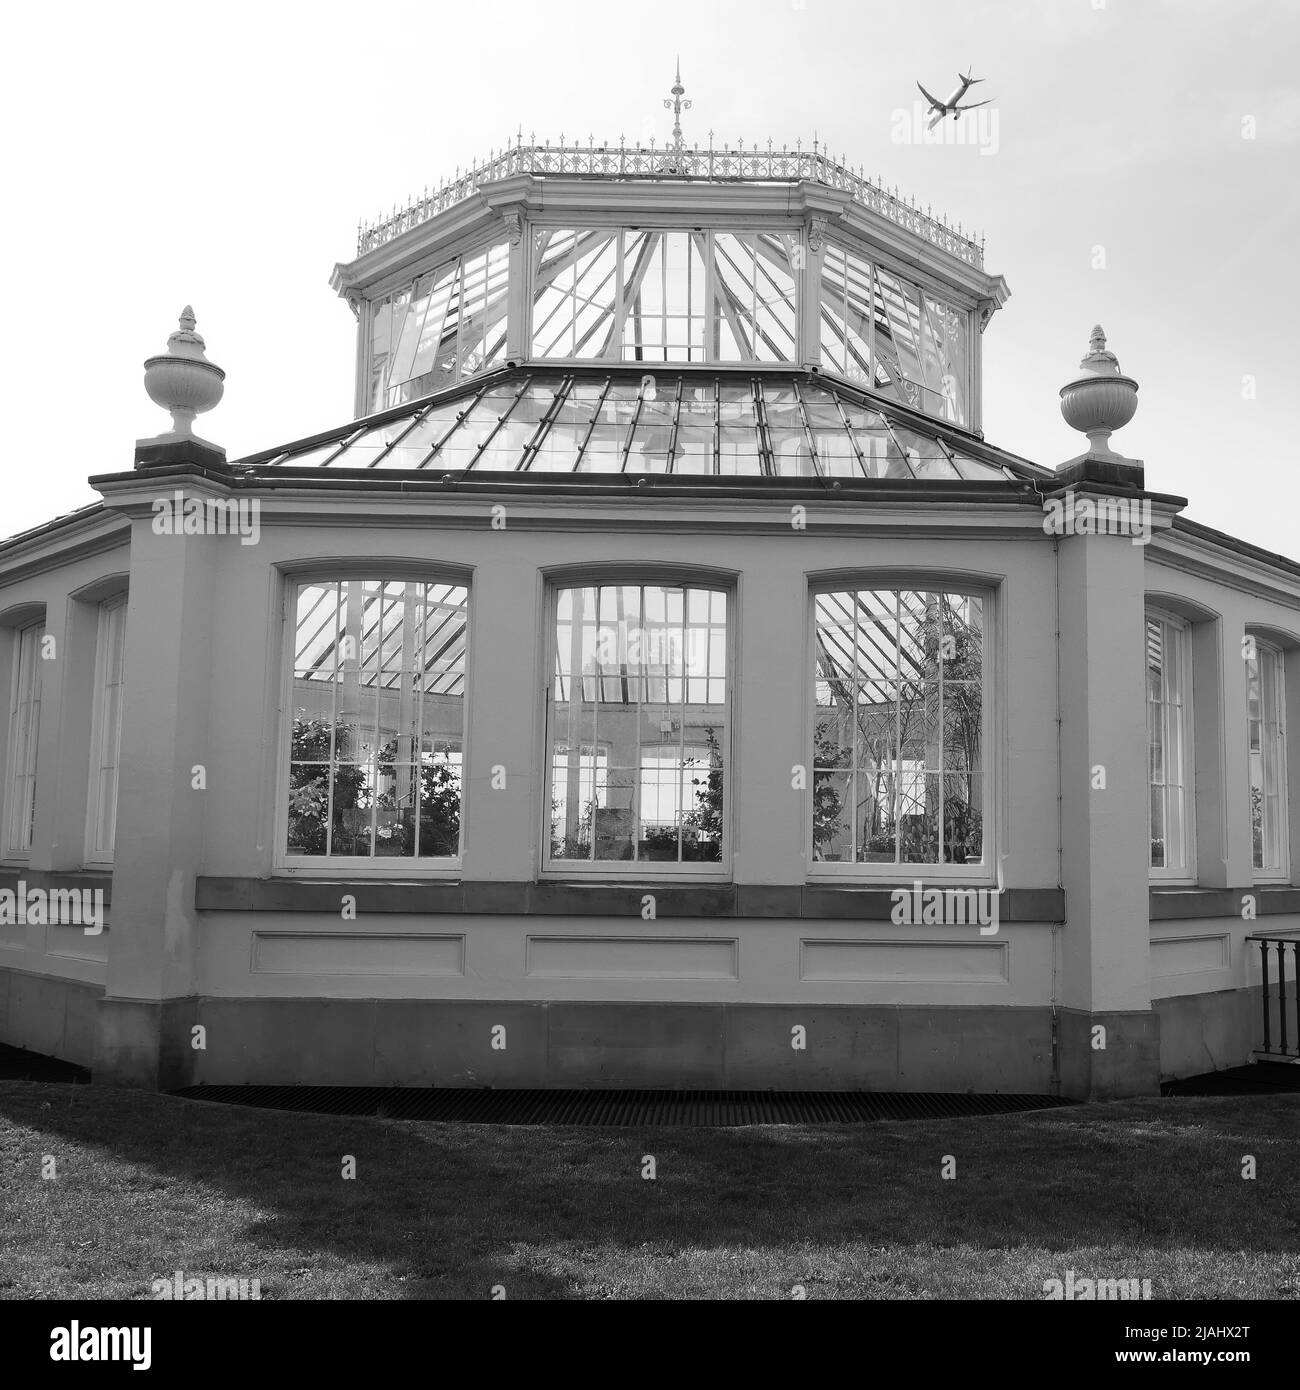 Richmond, Grand Londres, Angleterre, 18 mai 2022: Jardins botaniques royaux Kew. Maison tempérée avec avion survolant. Monochrome. Banque D'Images